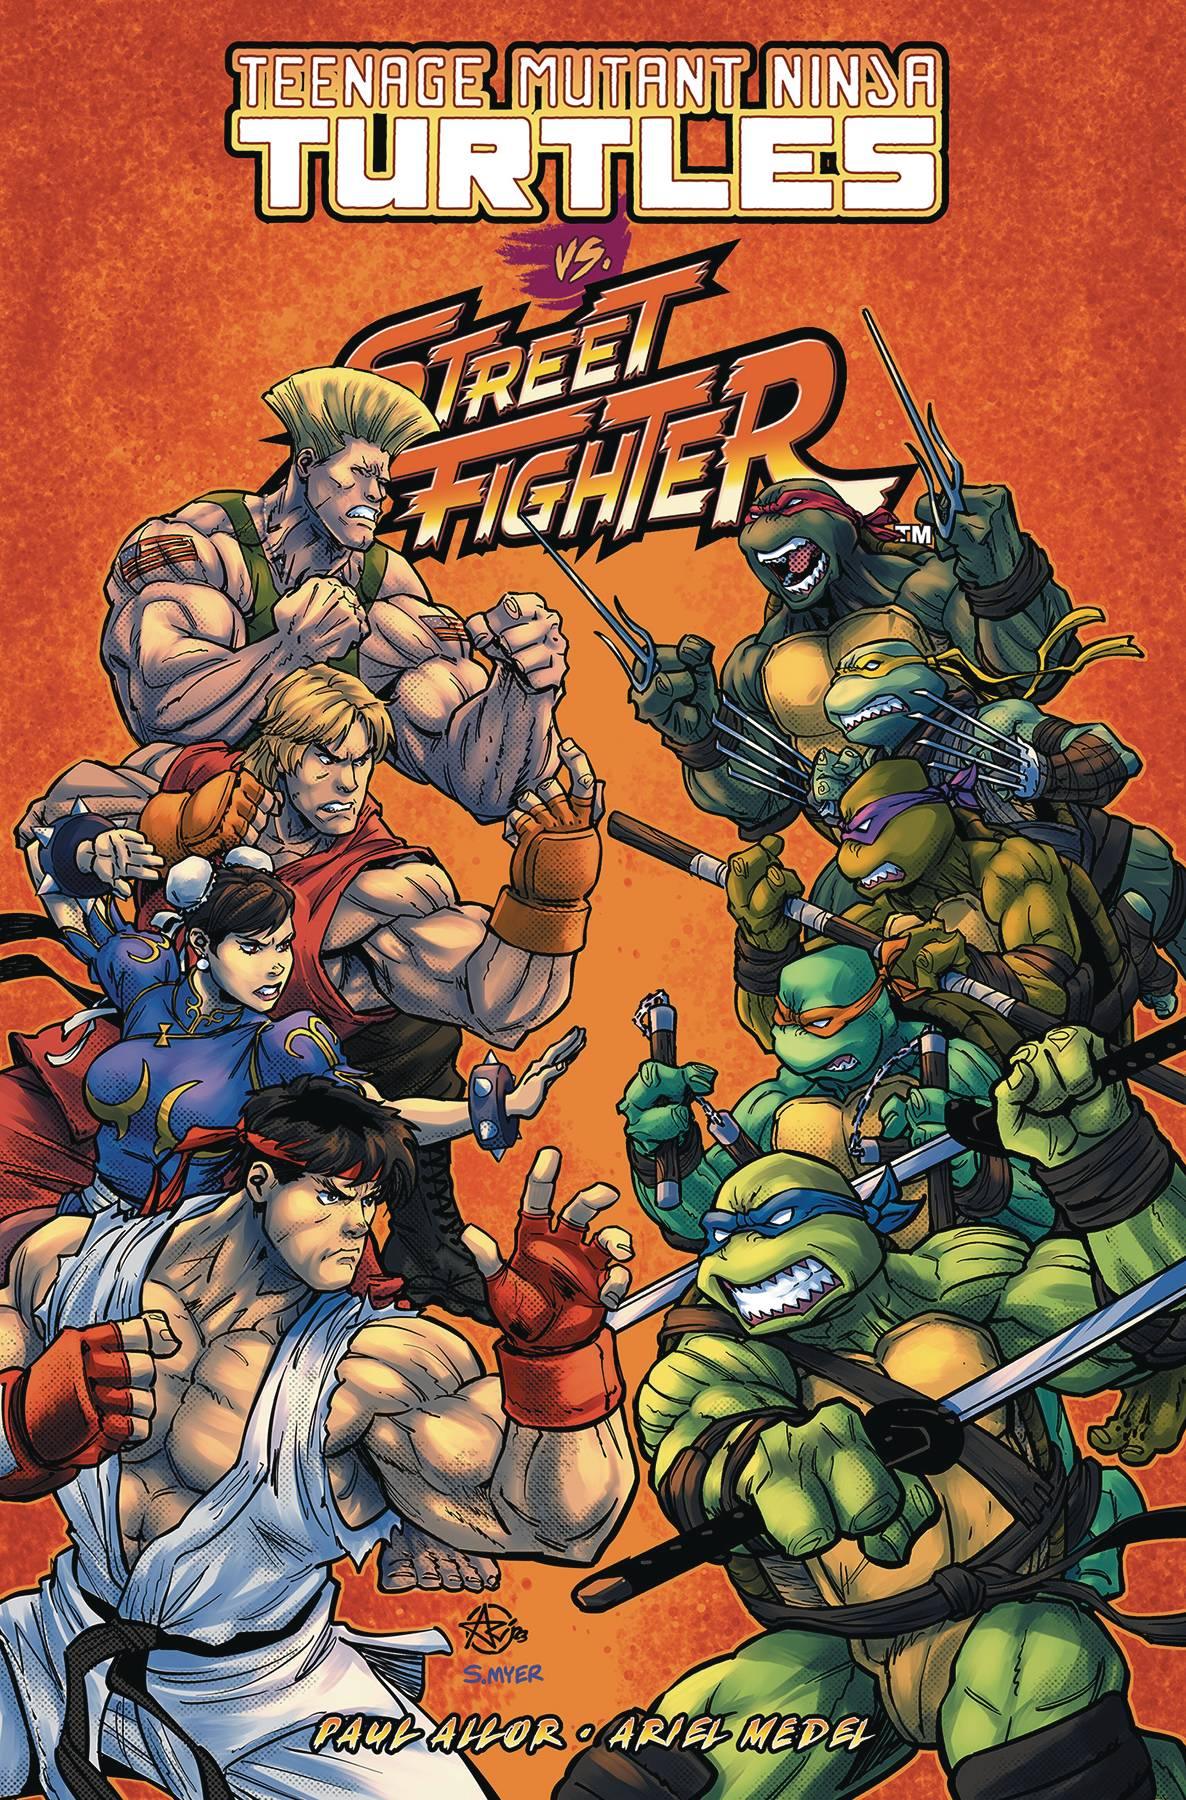 TEENAGE MUTANT NINJA TURTLES VS STREET FIGHTER TP - Kings Comics